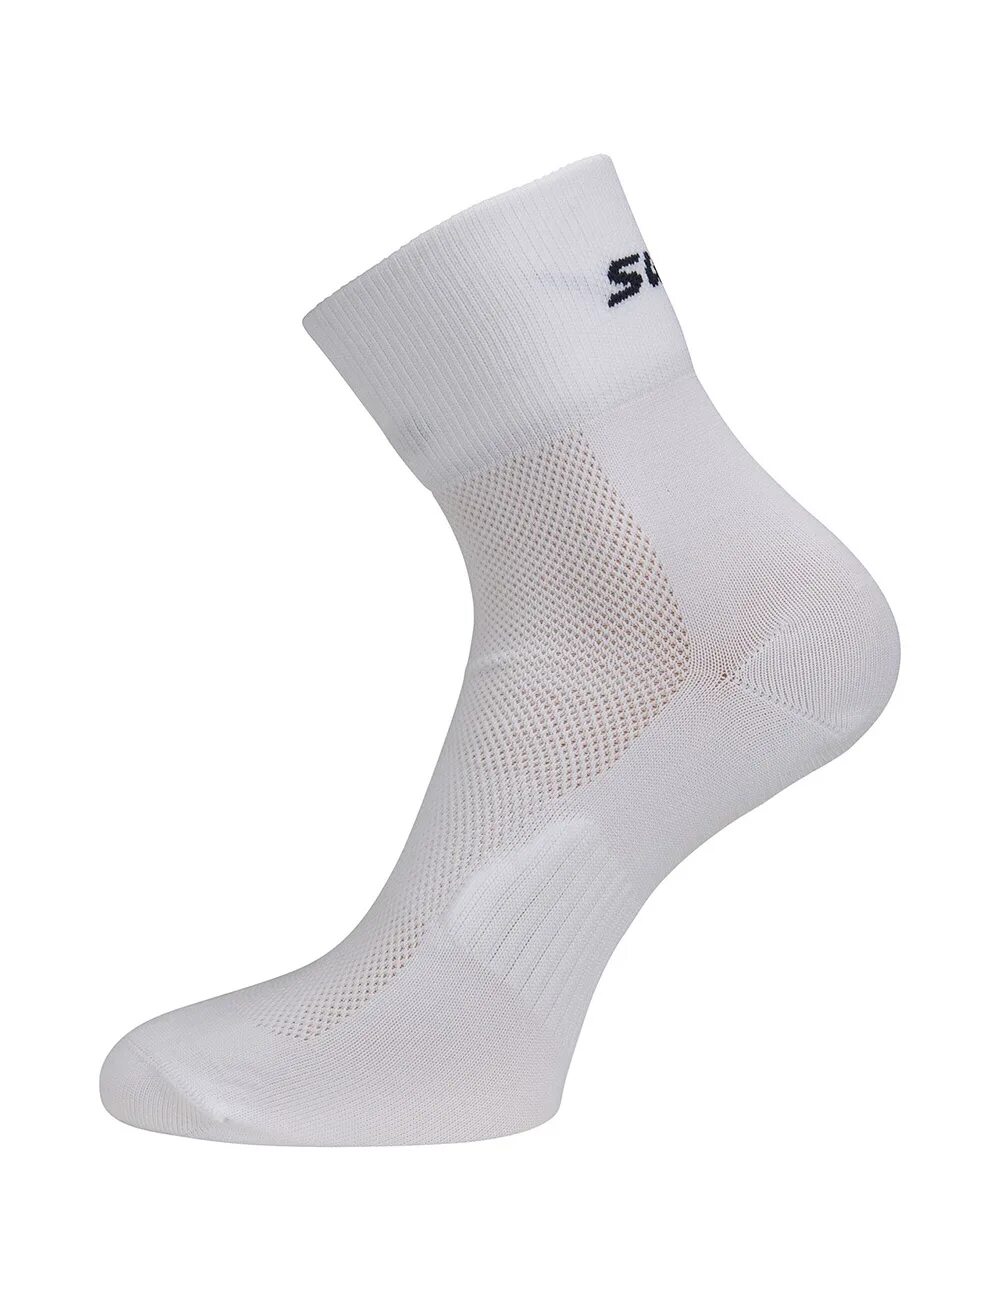 Носки Swix. Спортивные носки. Носки для лыжников. Active2 c6 White купить в СПБ. Носки active